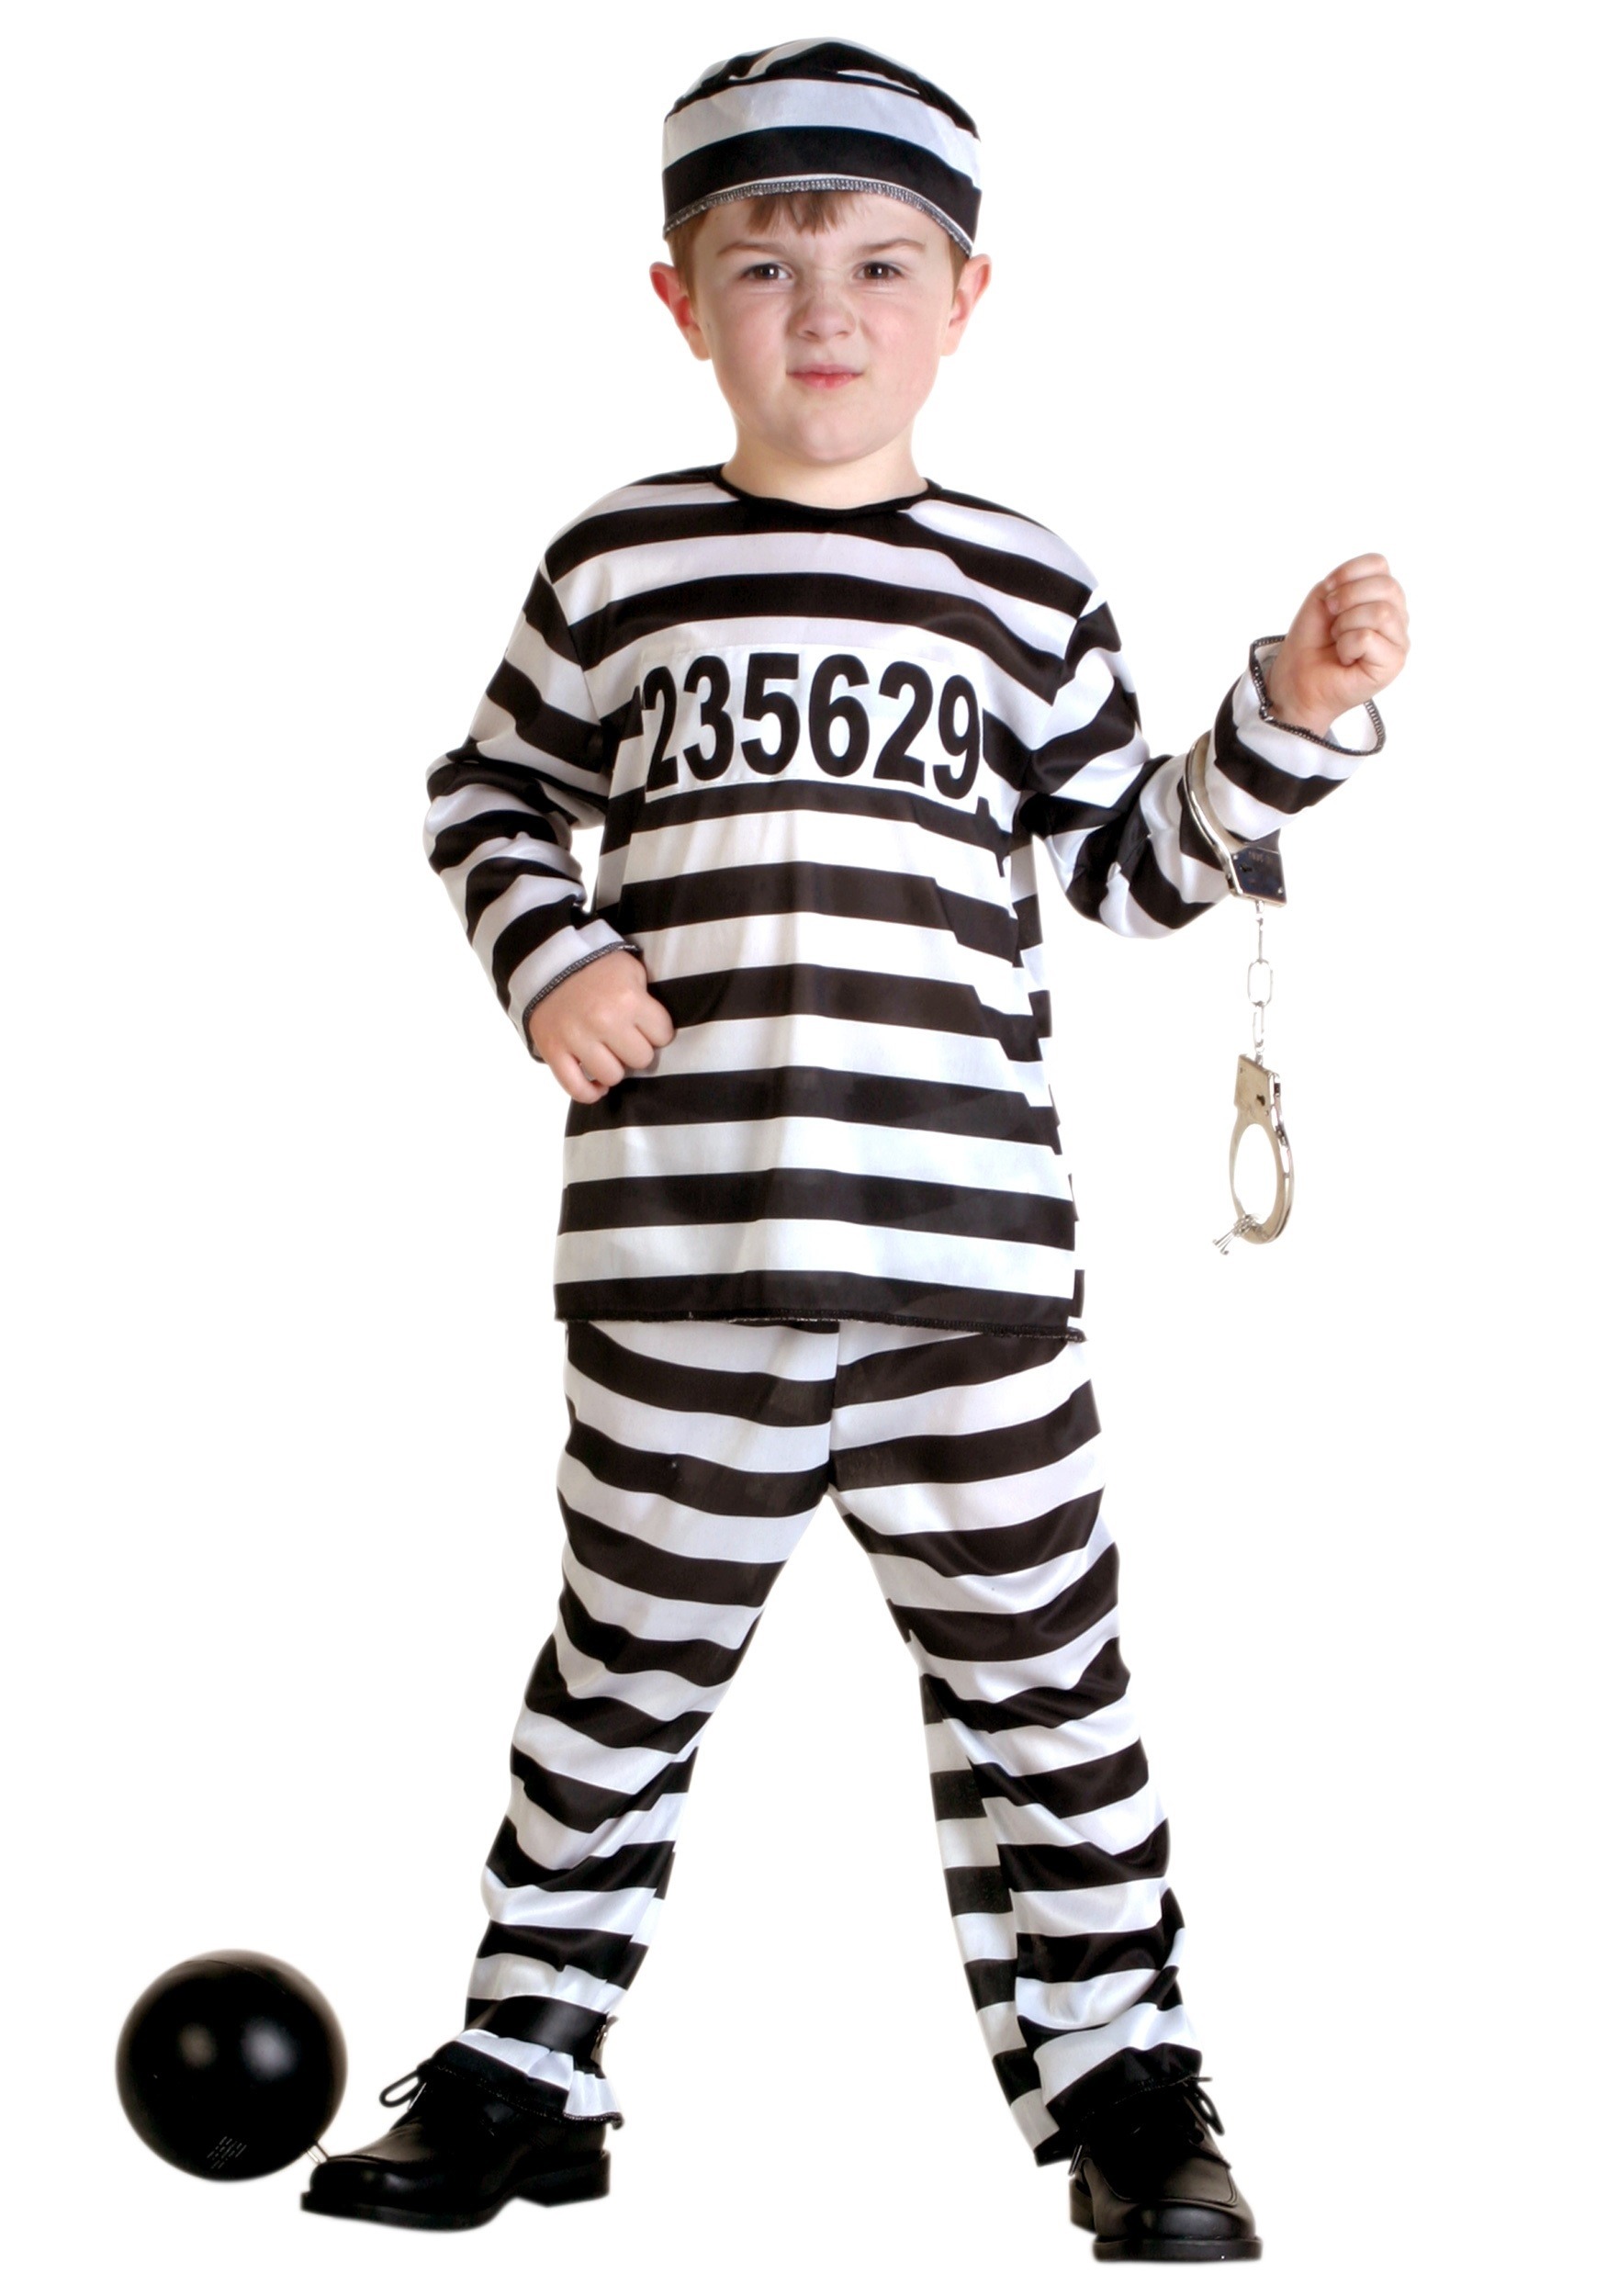 Striped Prisoner Costume For Toddlers , Jailbird Costume For Kids